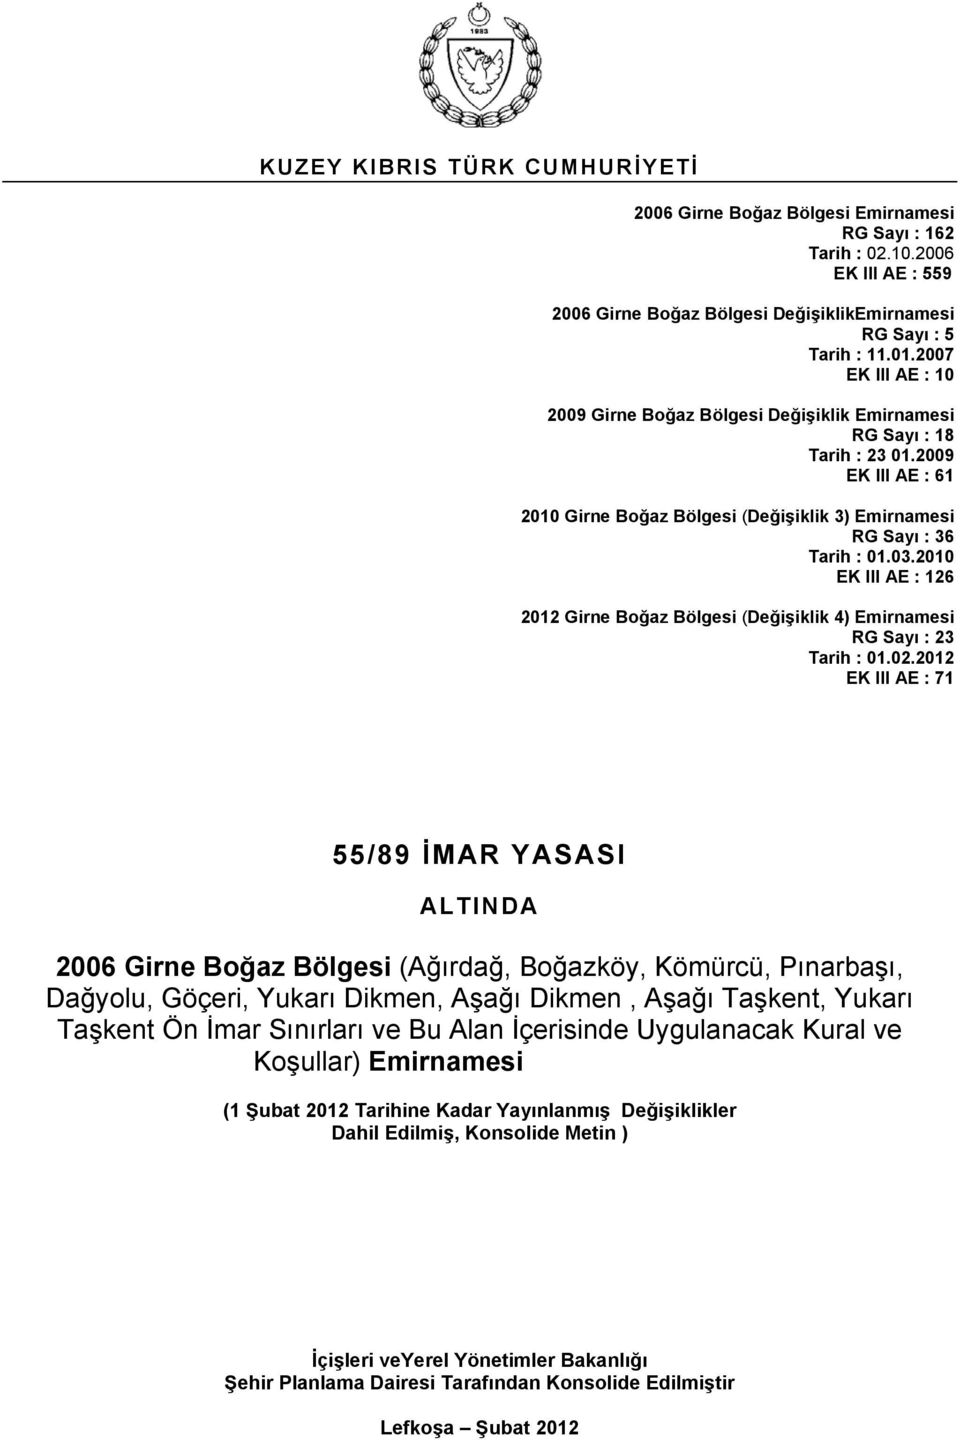 2009 EK III AE : 61 2010 Girne Boğaz Bölgesi (Değişiklik 3) Emirnamesi RG Sayı : 36 Tarih : EK III AE : 126 2012 Girne Boğaz Bölgesi (Değişiklik 4) Emirnamesi RG Sayı : 23 Tarih : 01.02.